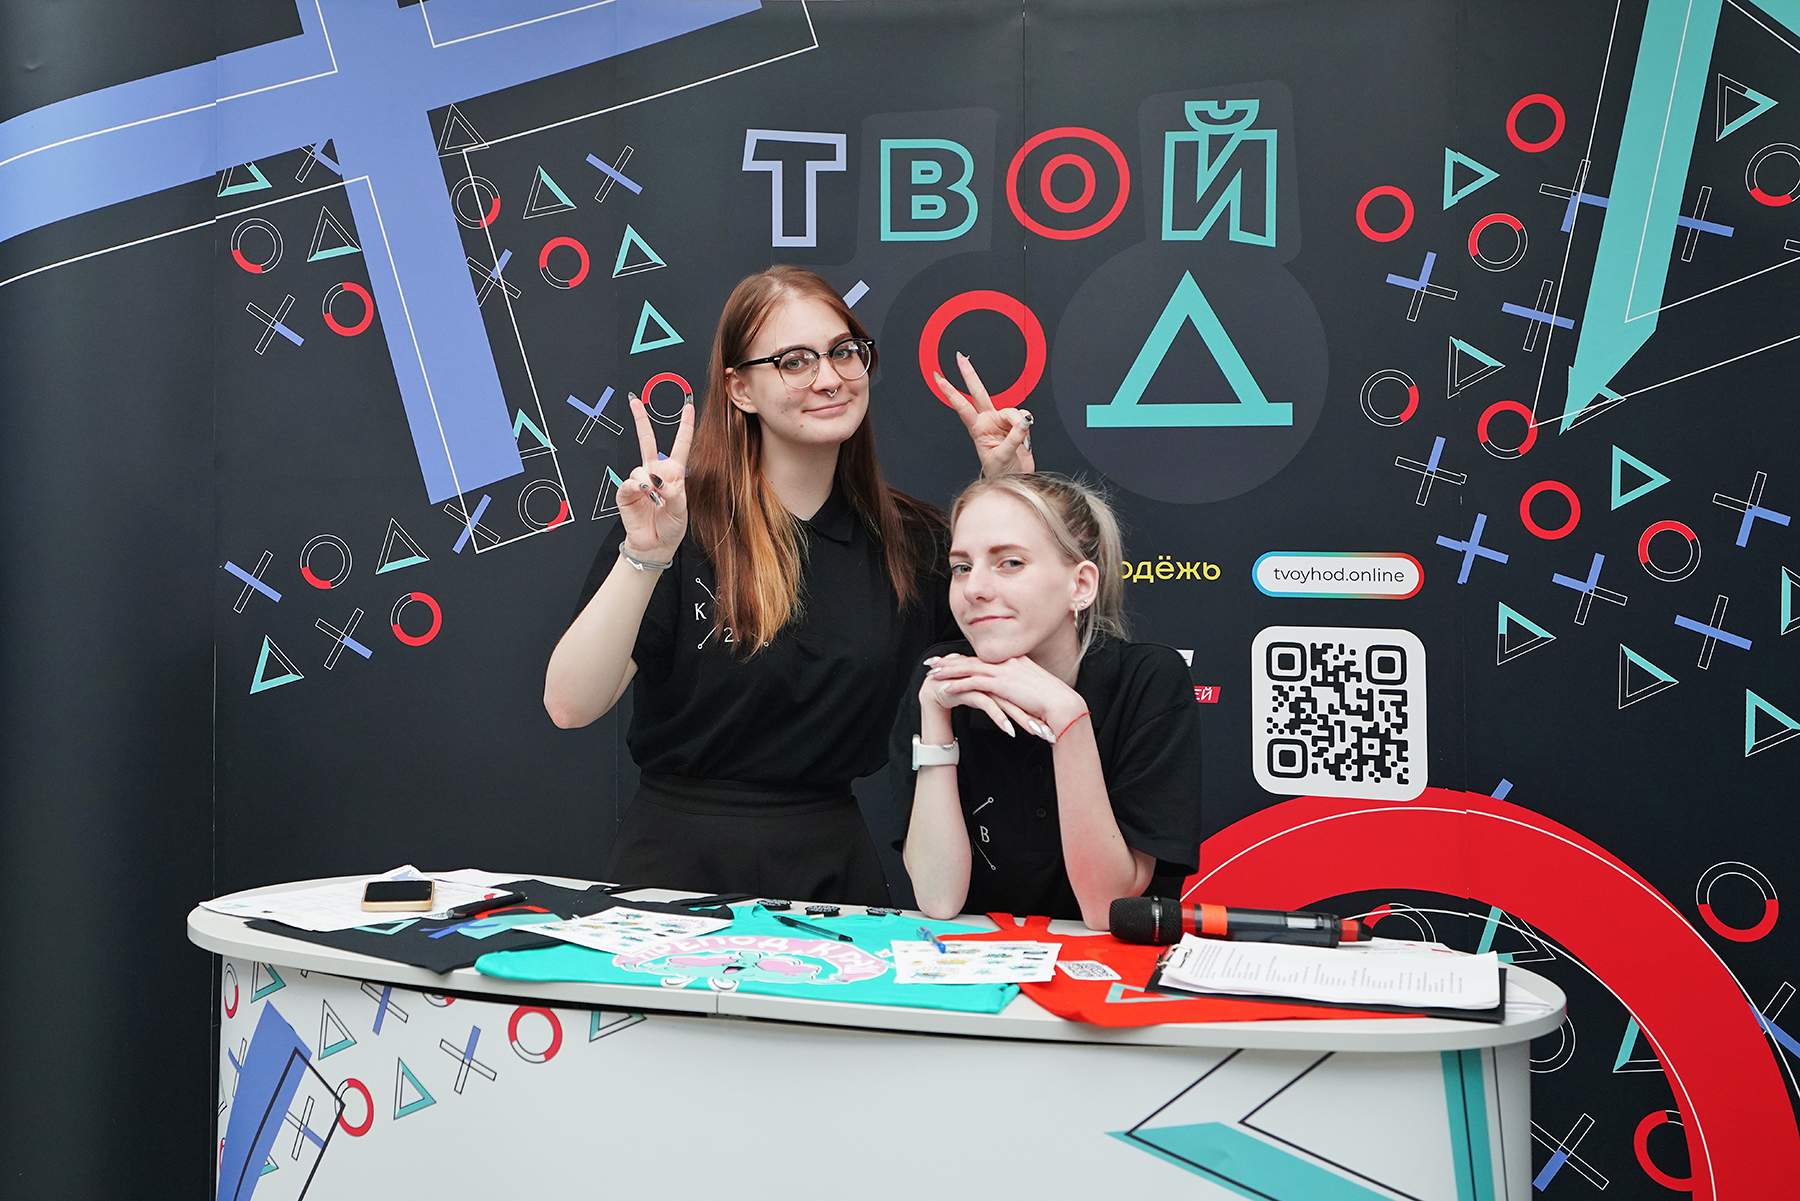 Всероссийский студенческий конкурс «Твой Ход» – старт второго сезона во ВГУЭС